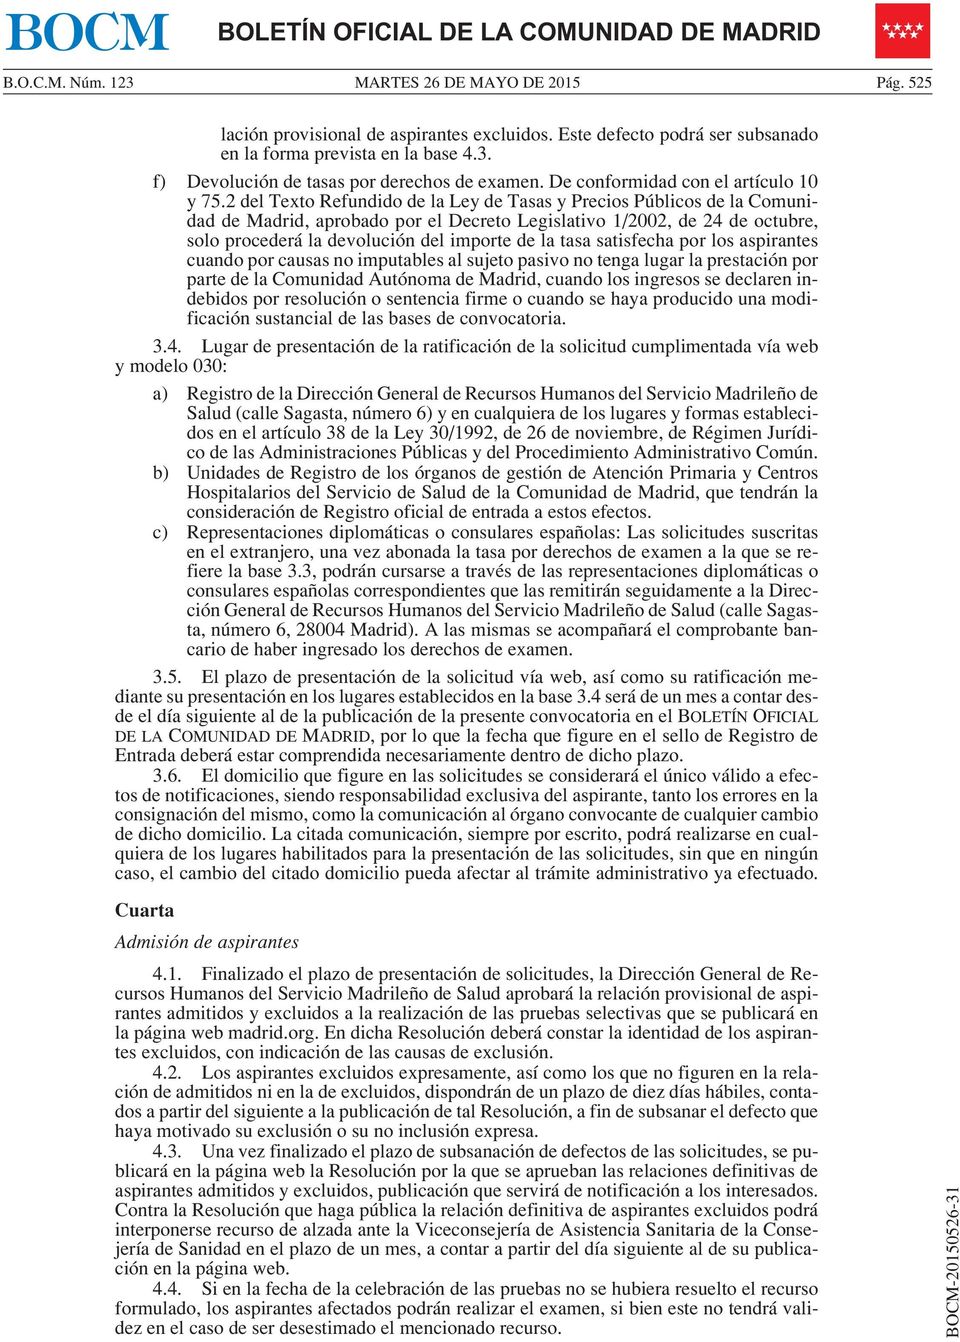 2 del Texto Refundido de la Ley de Tasas y Precios Públicos de la Comunidad de Madrid, aprobado por el Decreto Legislativo 1/2002, de 24 de octubre, solo procederá la devolución del importe de la